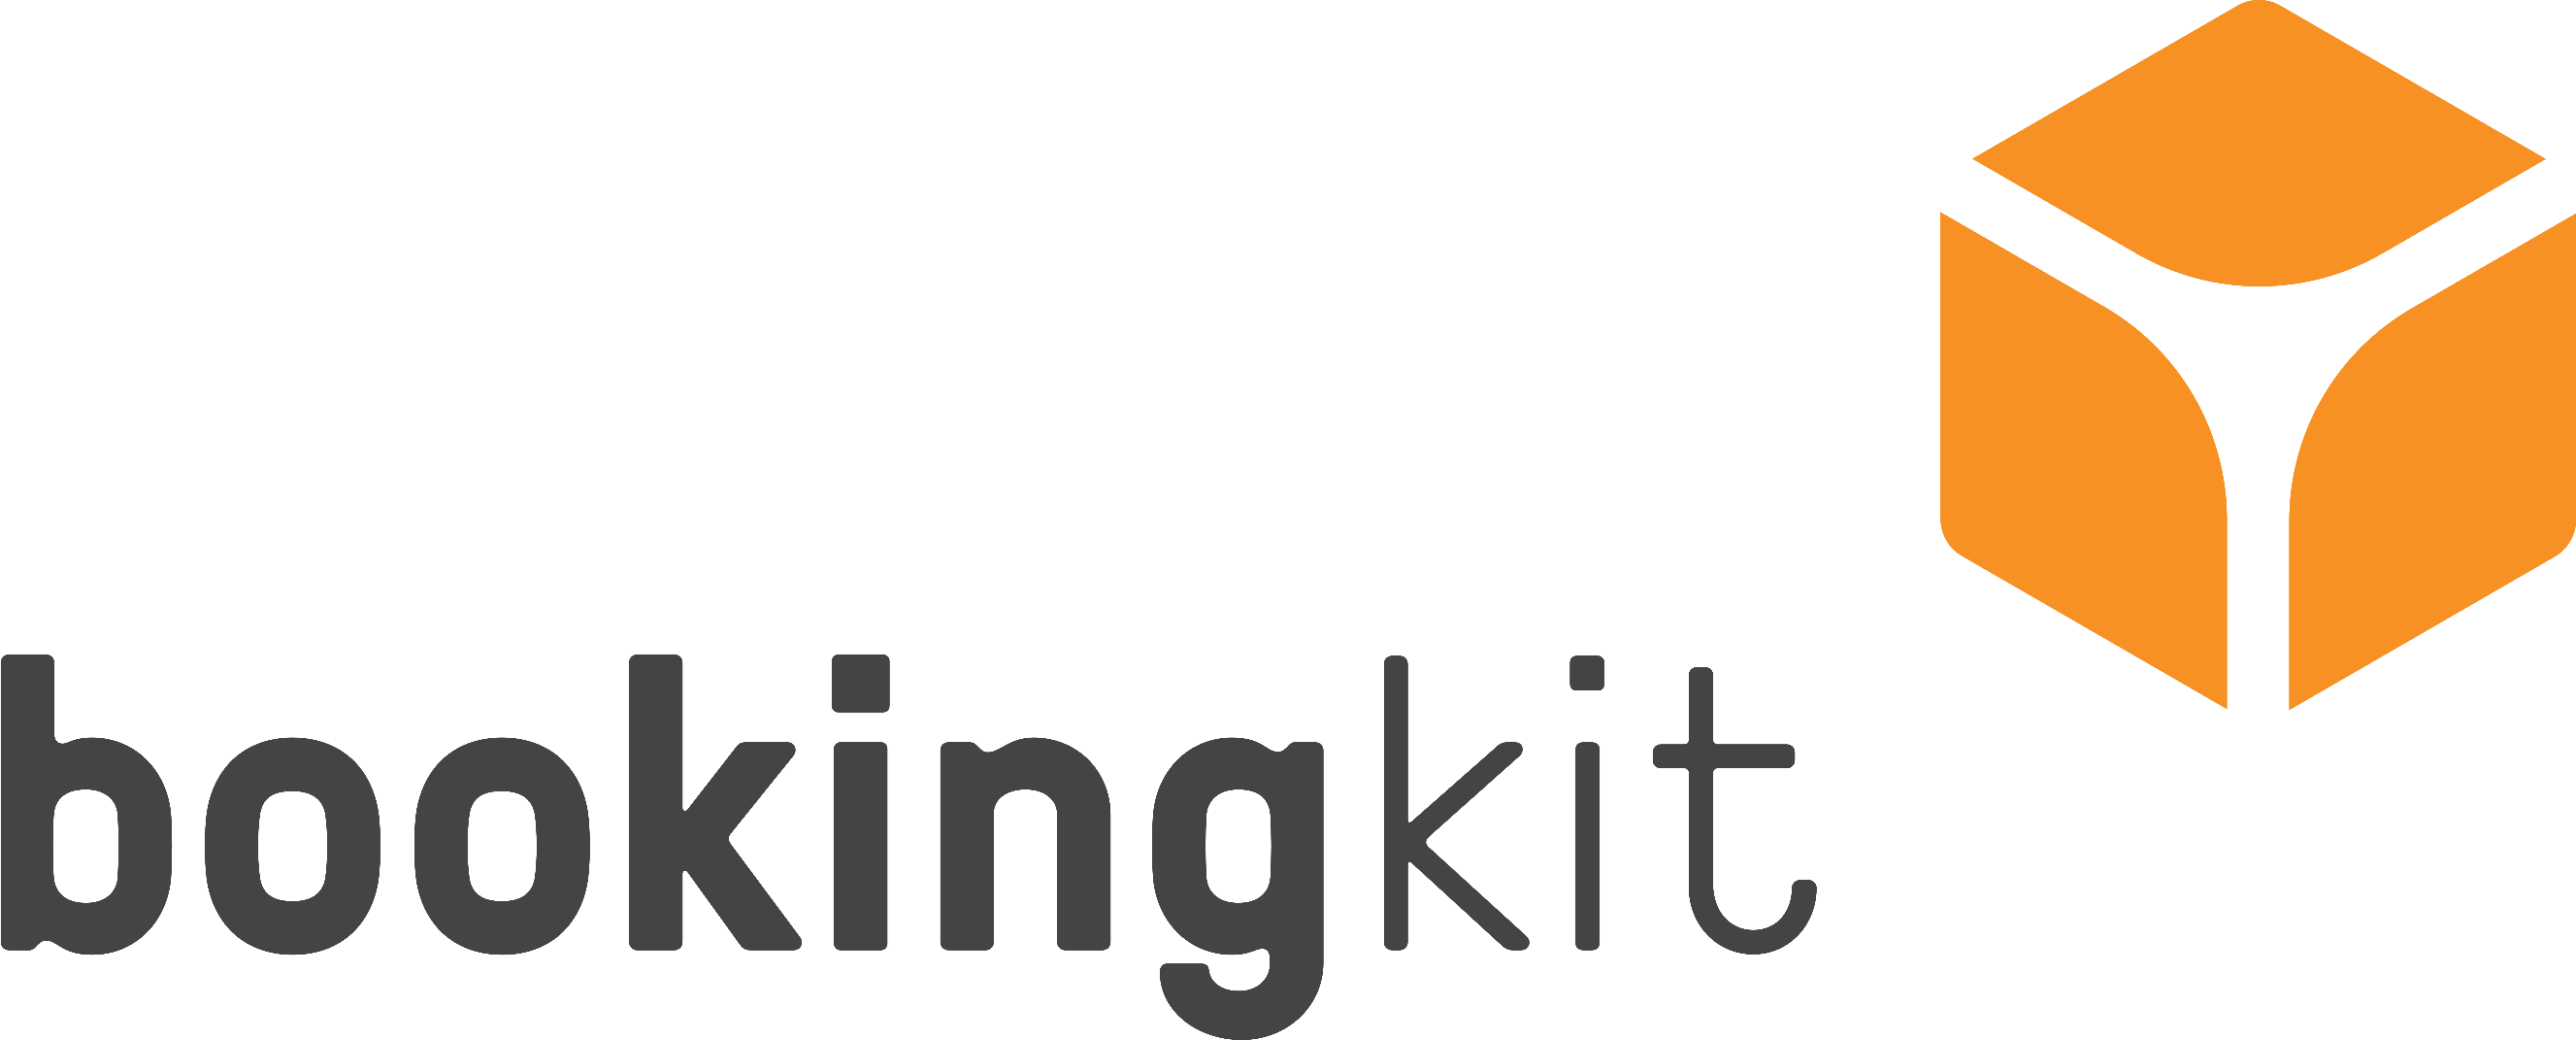 Logo Bookingkit 1 - Booking Kit (2654x1071), Png Download